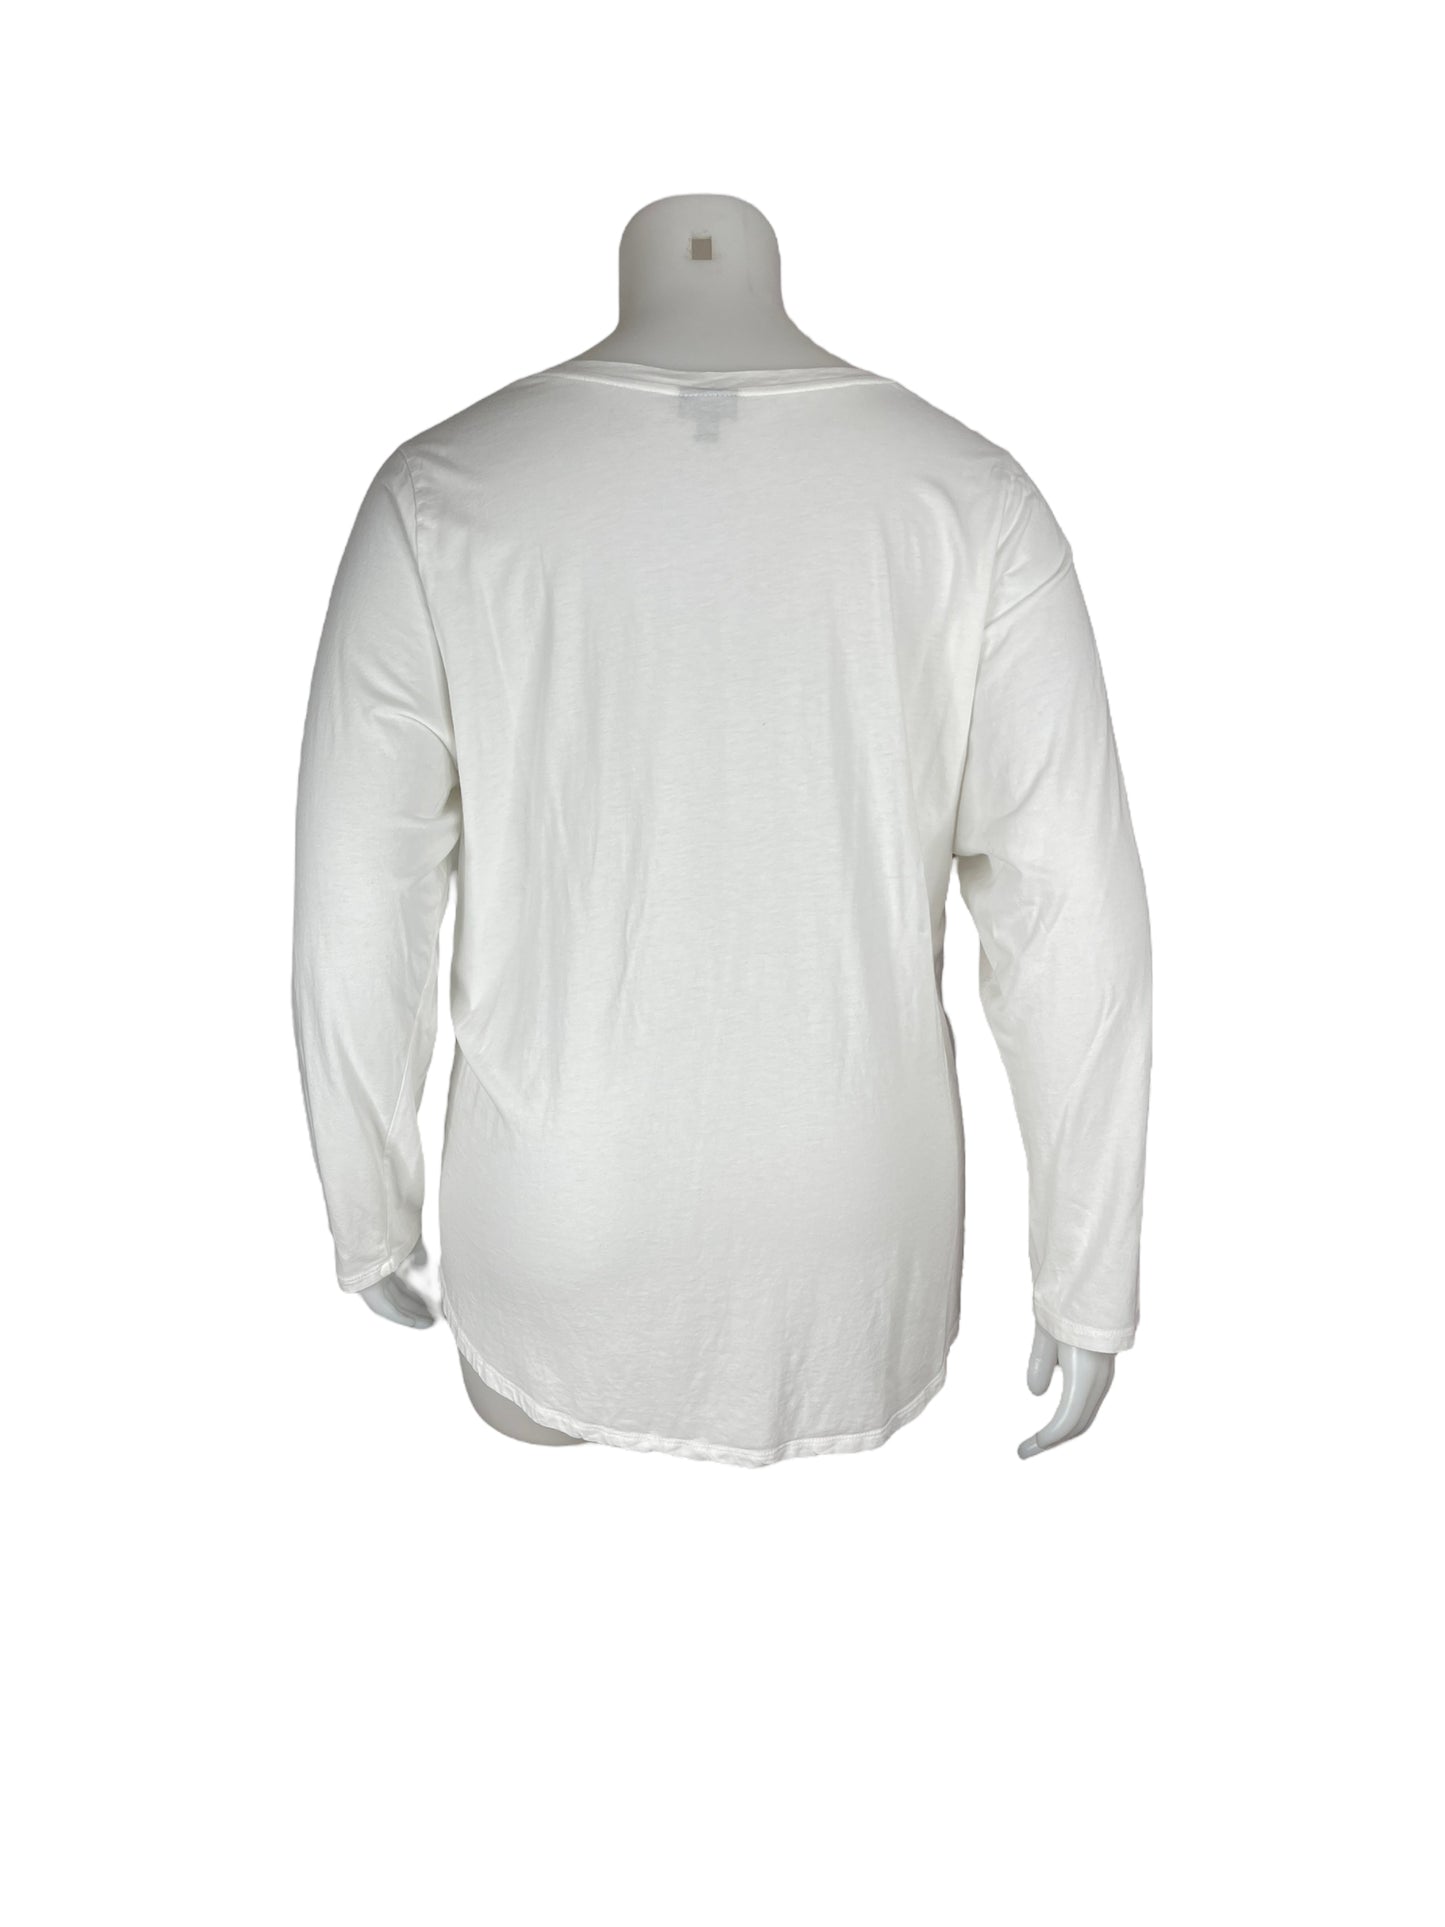 “Torrid” White V-neck Long Sleeve Shirt (5)